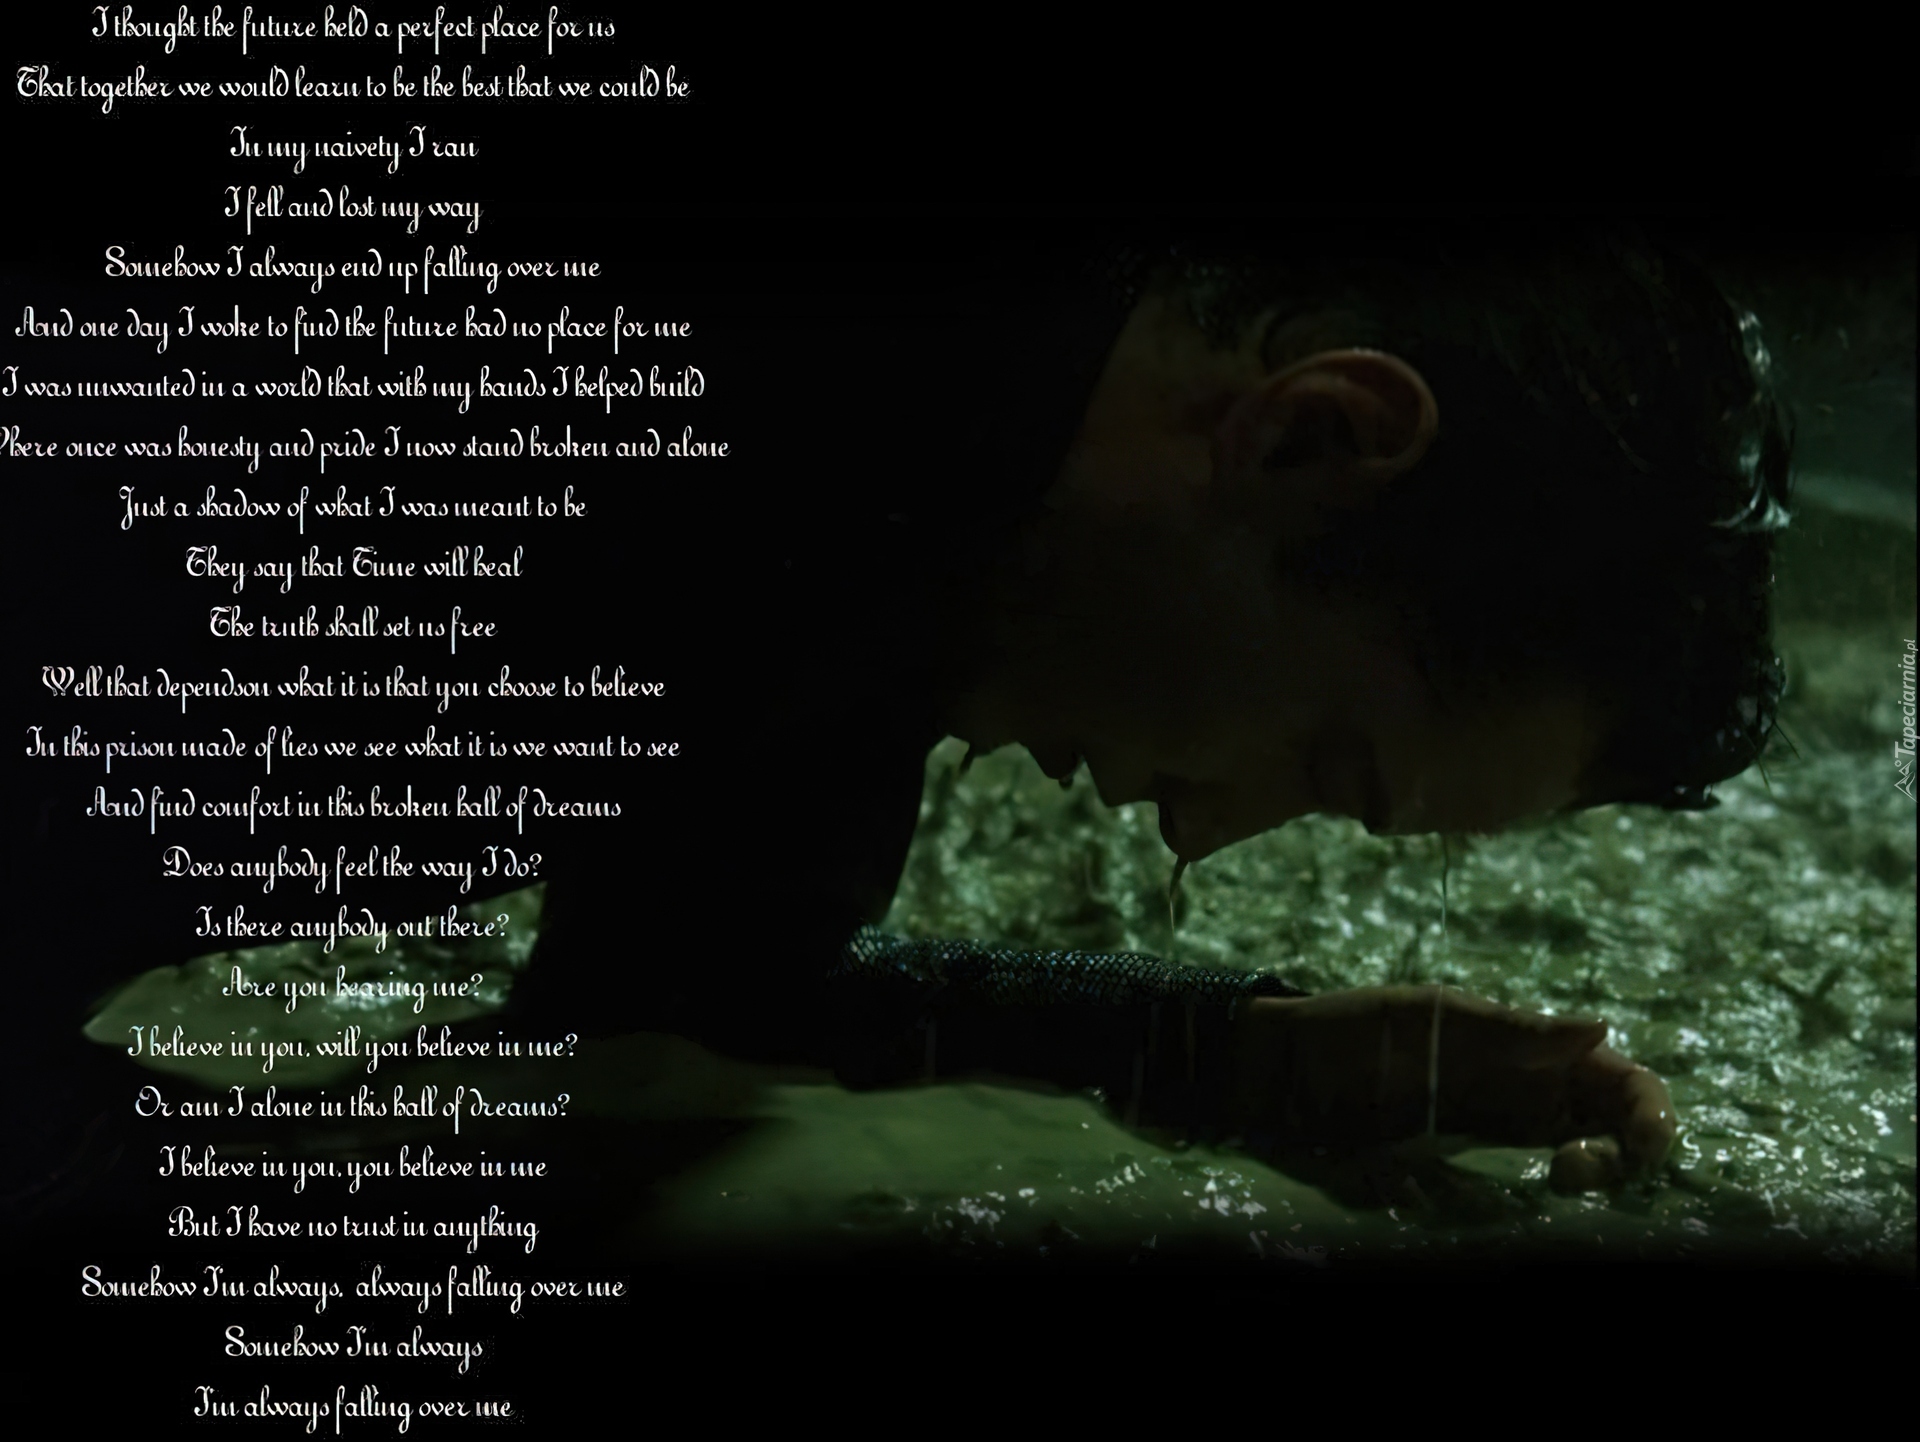 wiersz, Matrix, mężczyzna, mokry, błoto